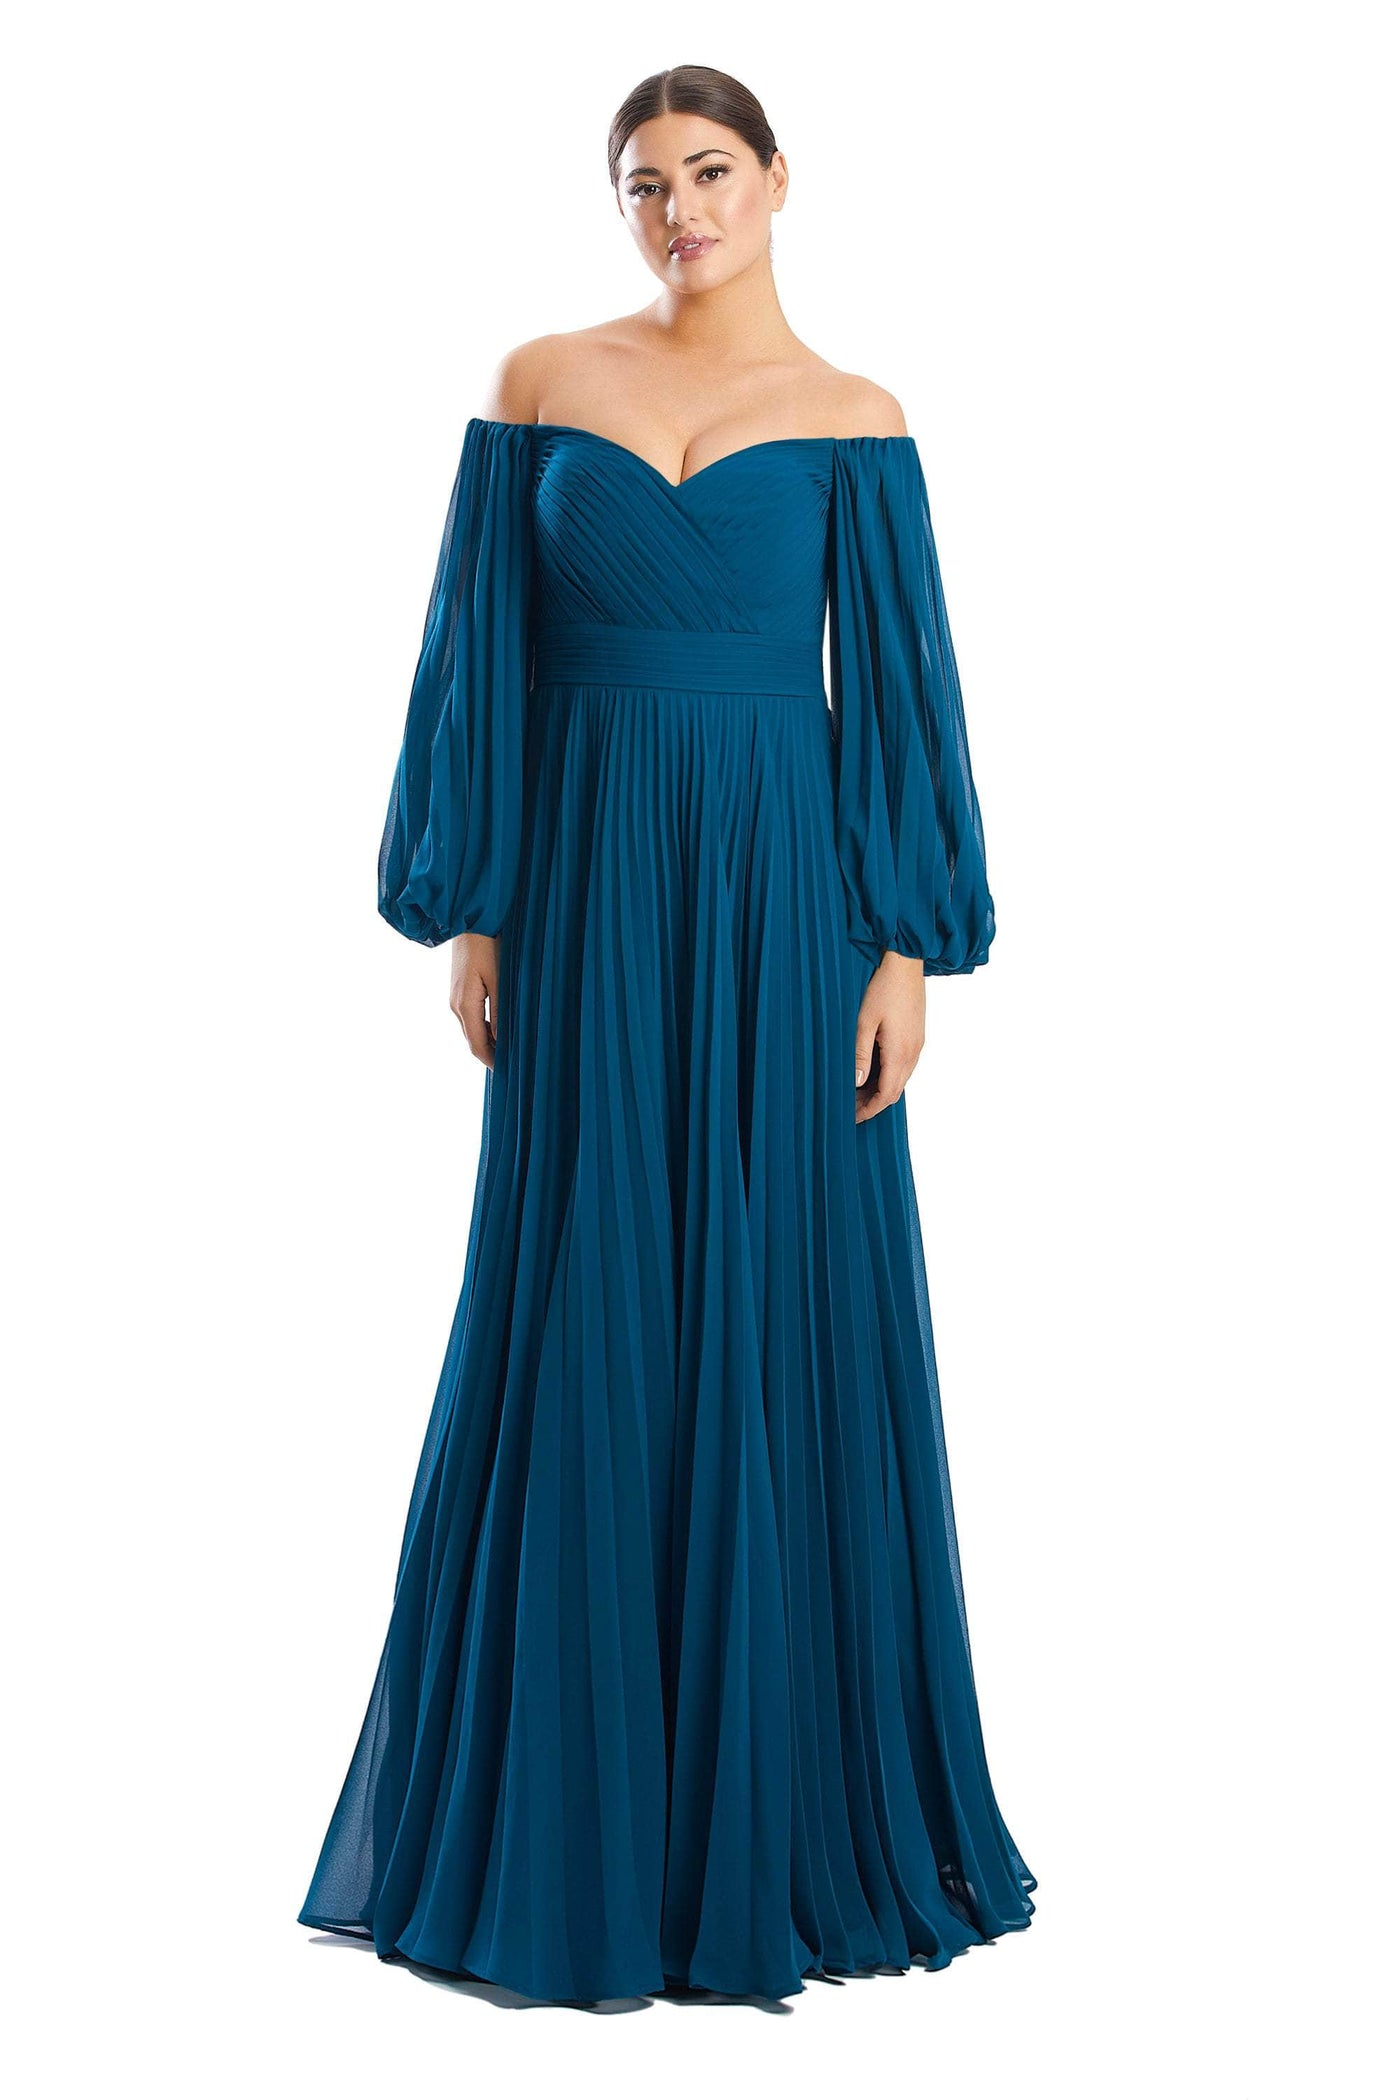 Alexander by Daymor 1792S23 - Off-Shoulder Chiffon Formal Dress Evening Dresses 00 / Teal Blue